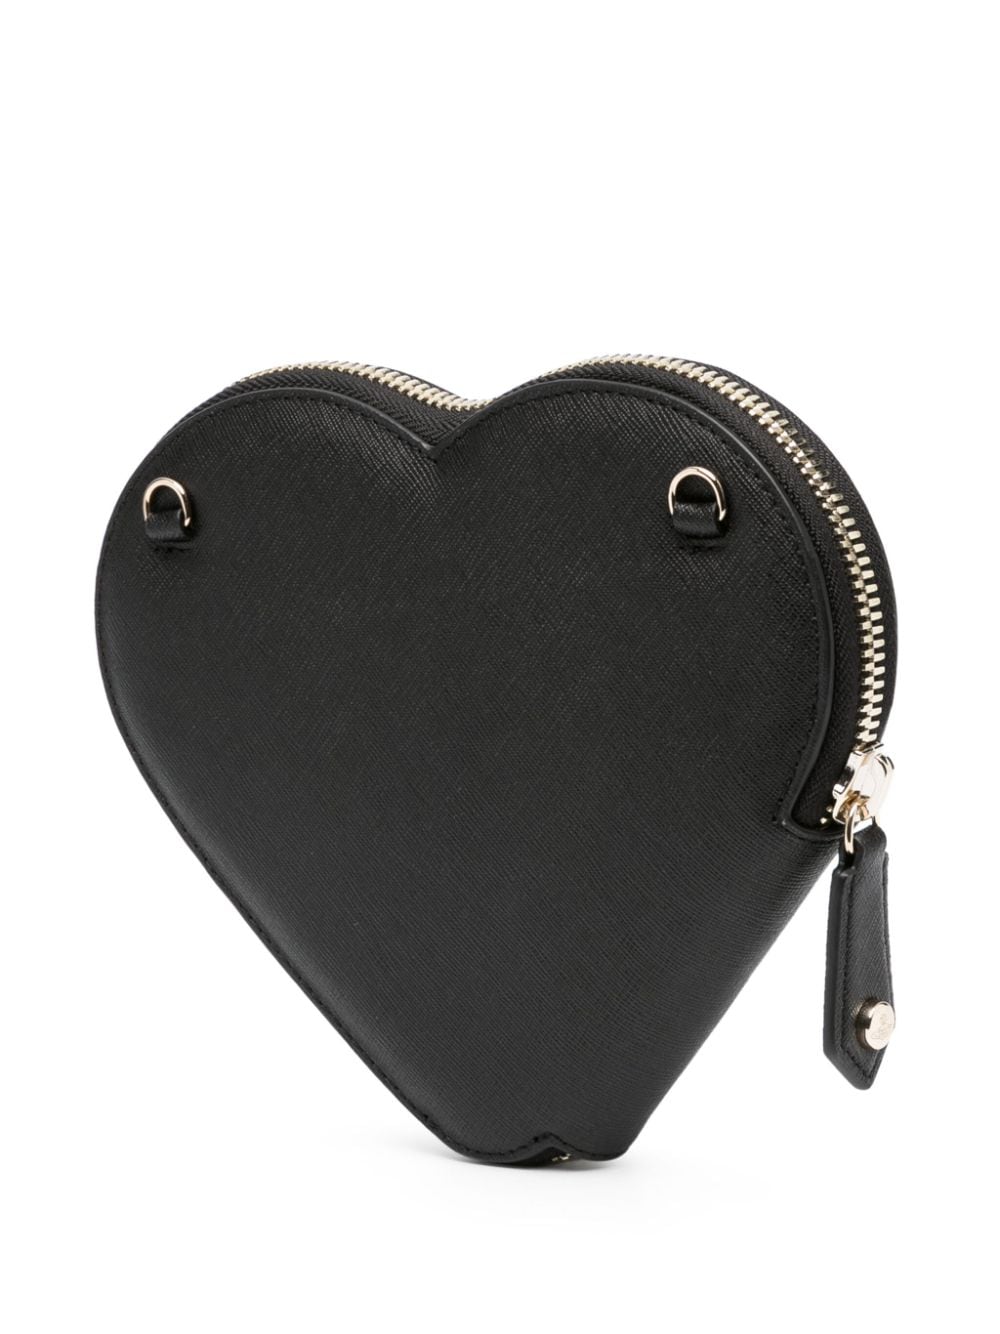 Heart shoulder bag